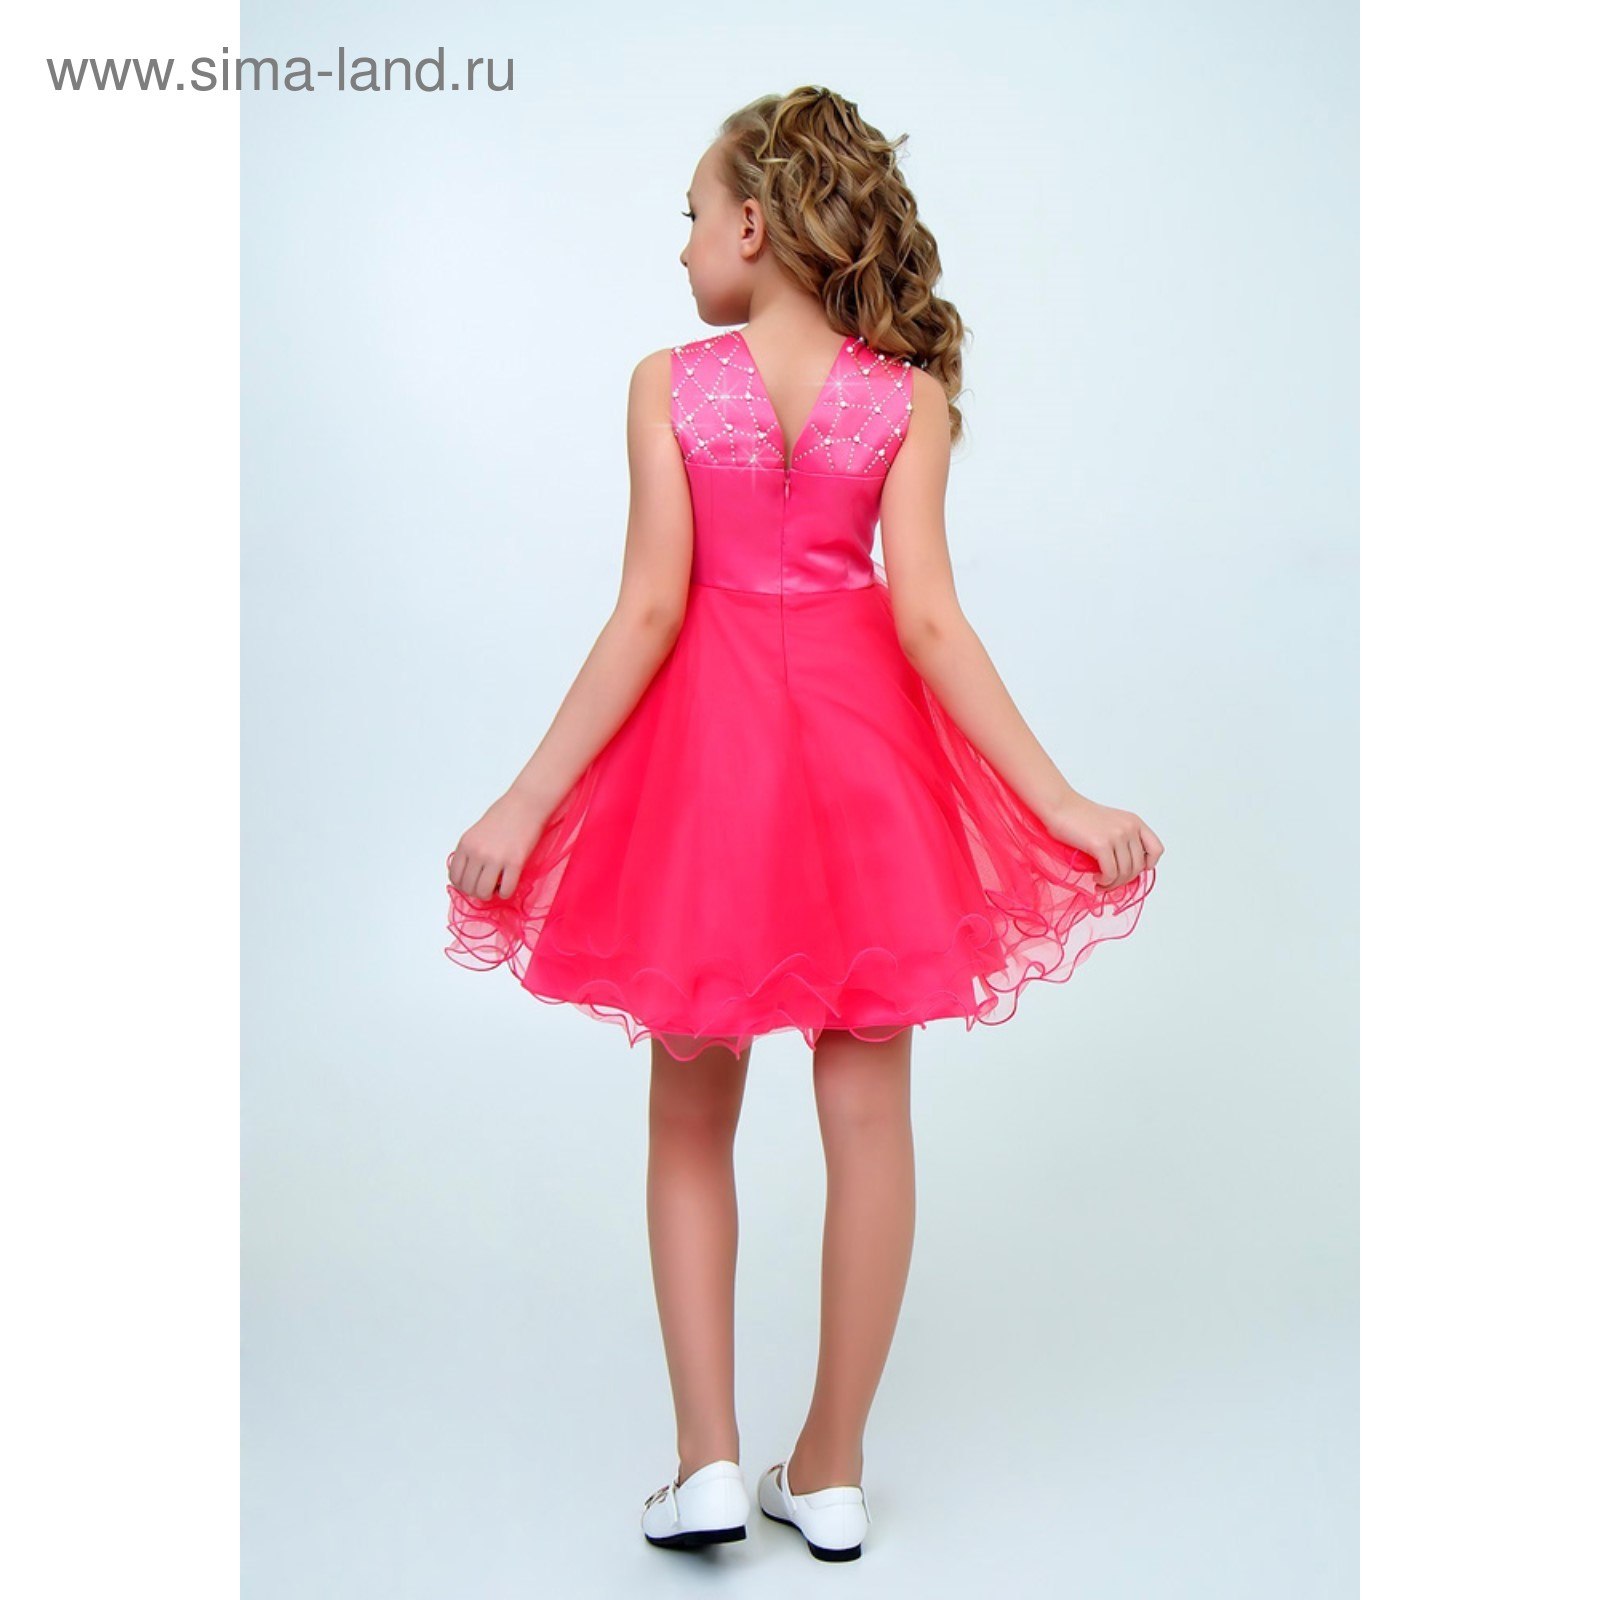 Купить Недорогое Нарядное Платье Для Девочки